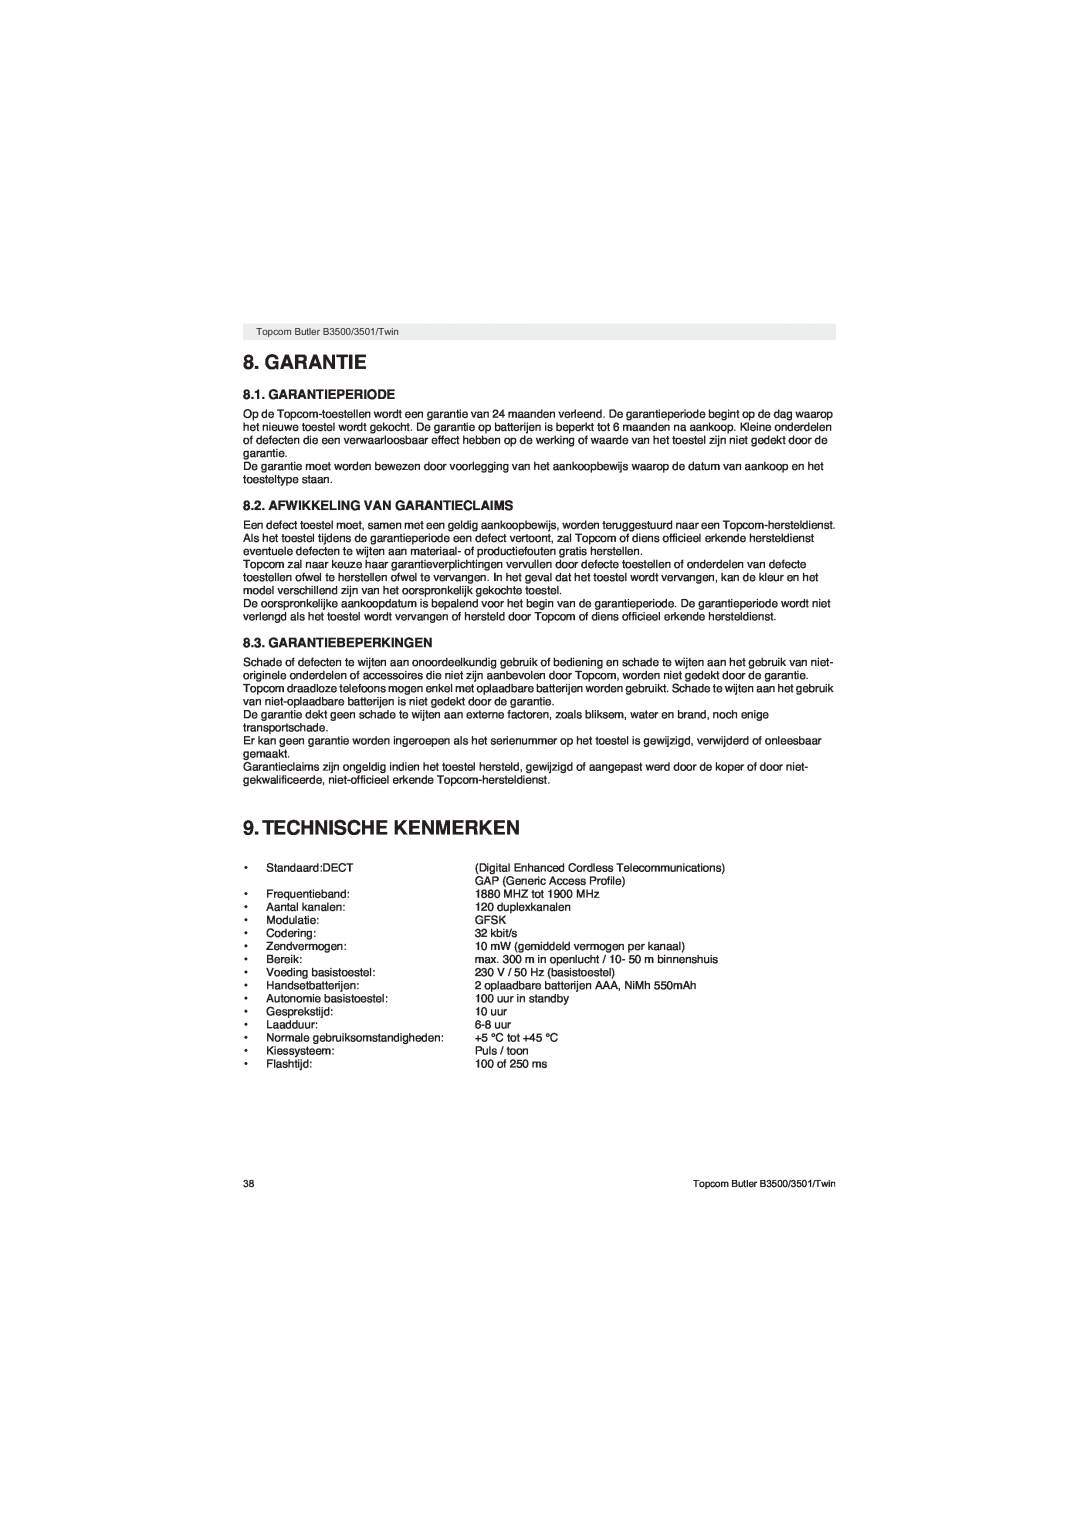 Topcom BUTLER 3500 manual Technische Kenmerken, Garantieperiode, Afwikkeling Van Garantieclaims, Garantiebeperkingen 